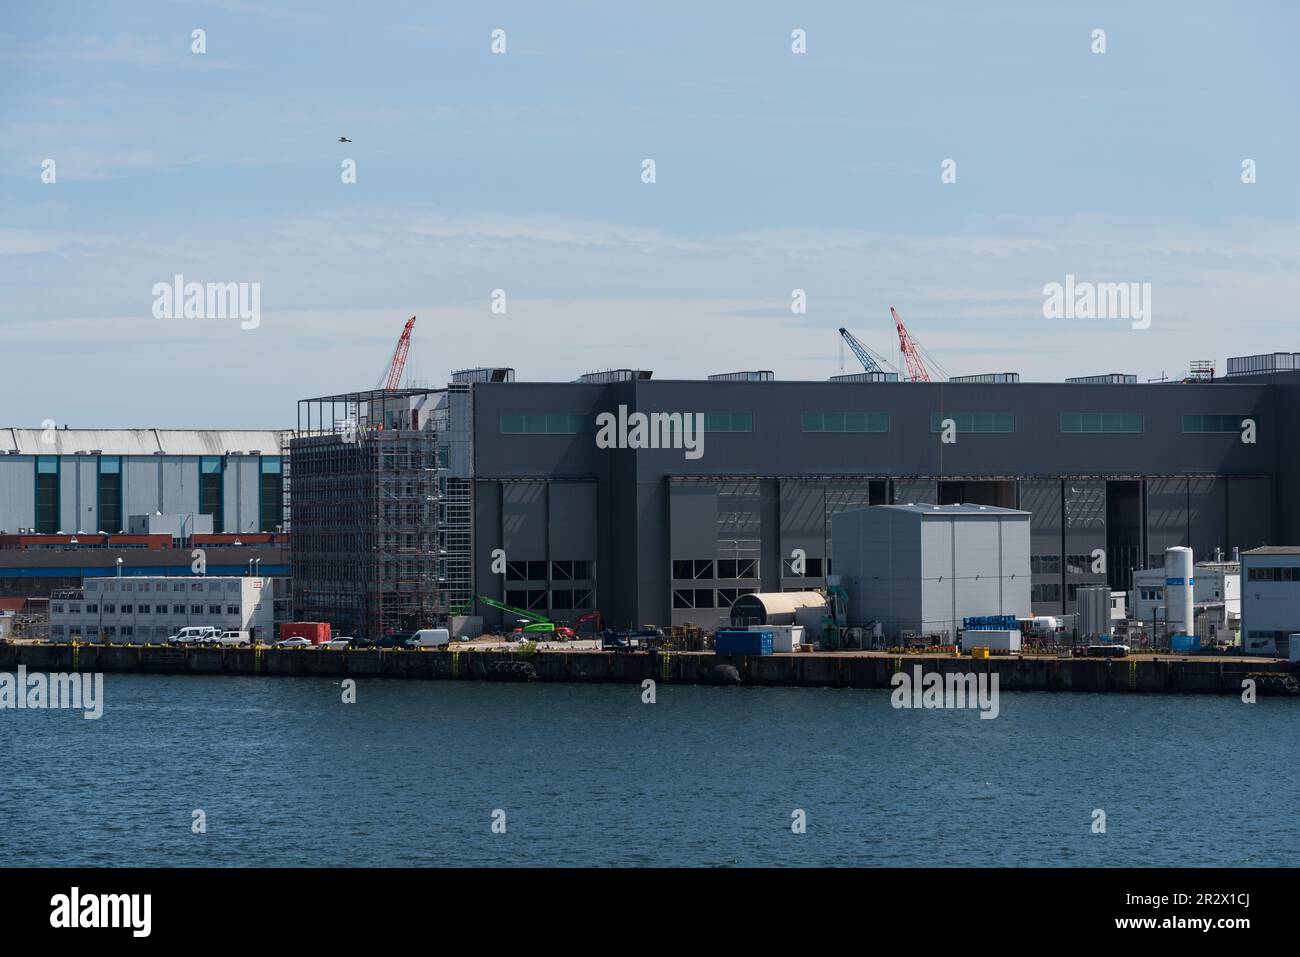 Blick über die Kieler Innenförde auf die Marineschiffswerft von ThyssenKrupp mit den Neubauten der Produktionshallen für Uboote der neuesten Generatio Stock Photo